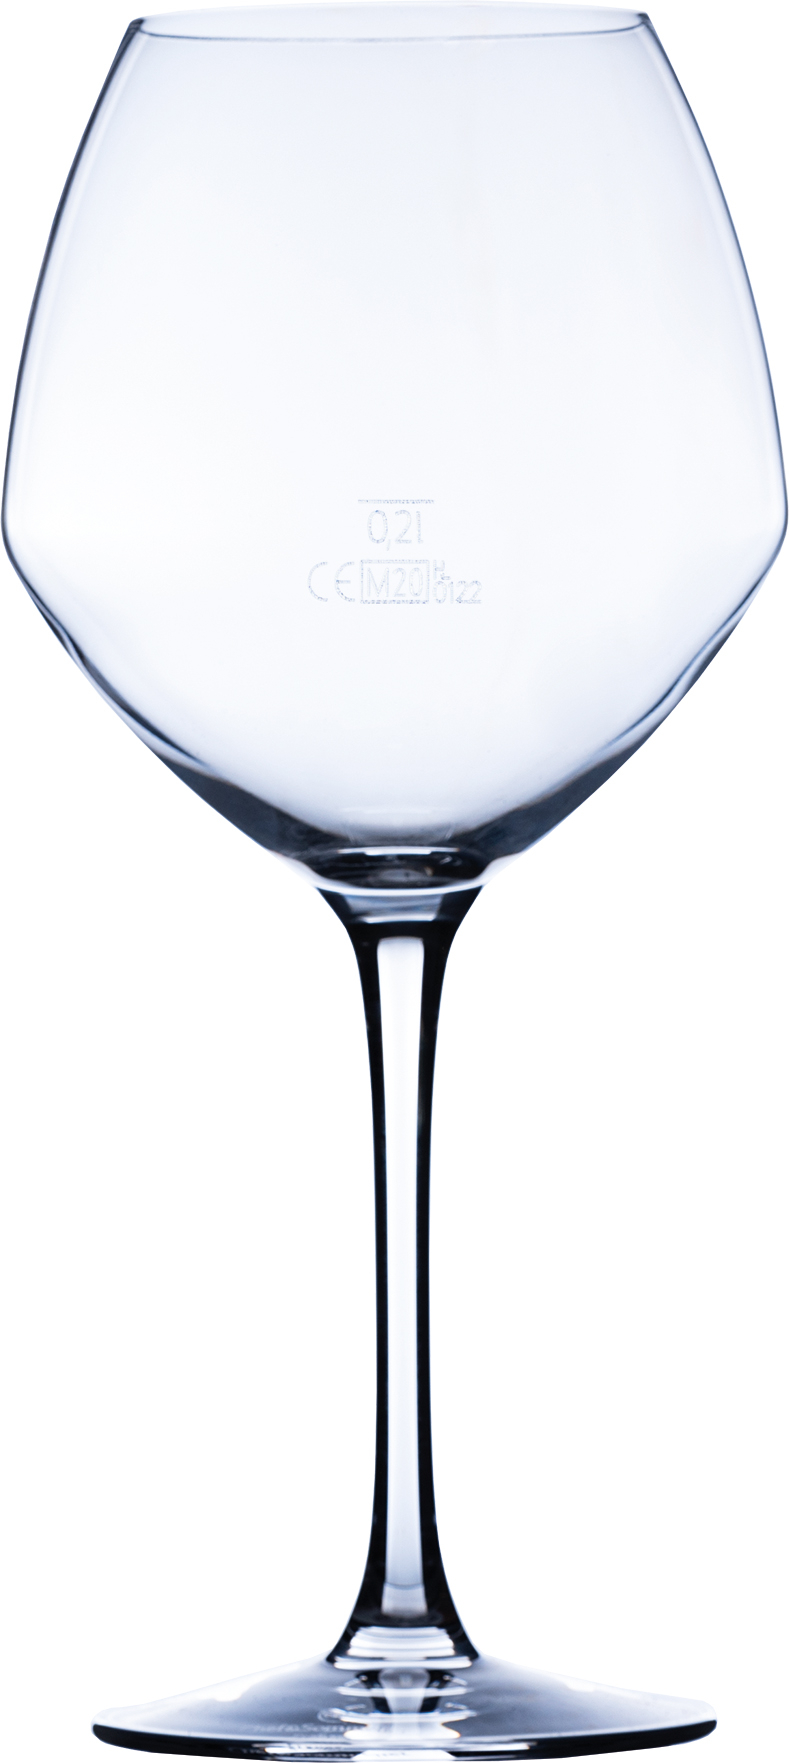 Vins Jeunes glass Cabernet, C&S - 580ml (6 pcs.)